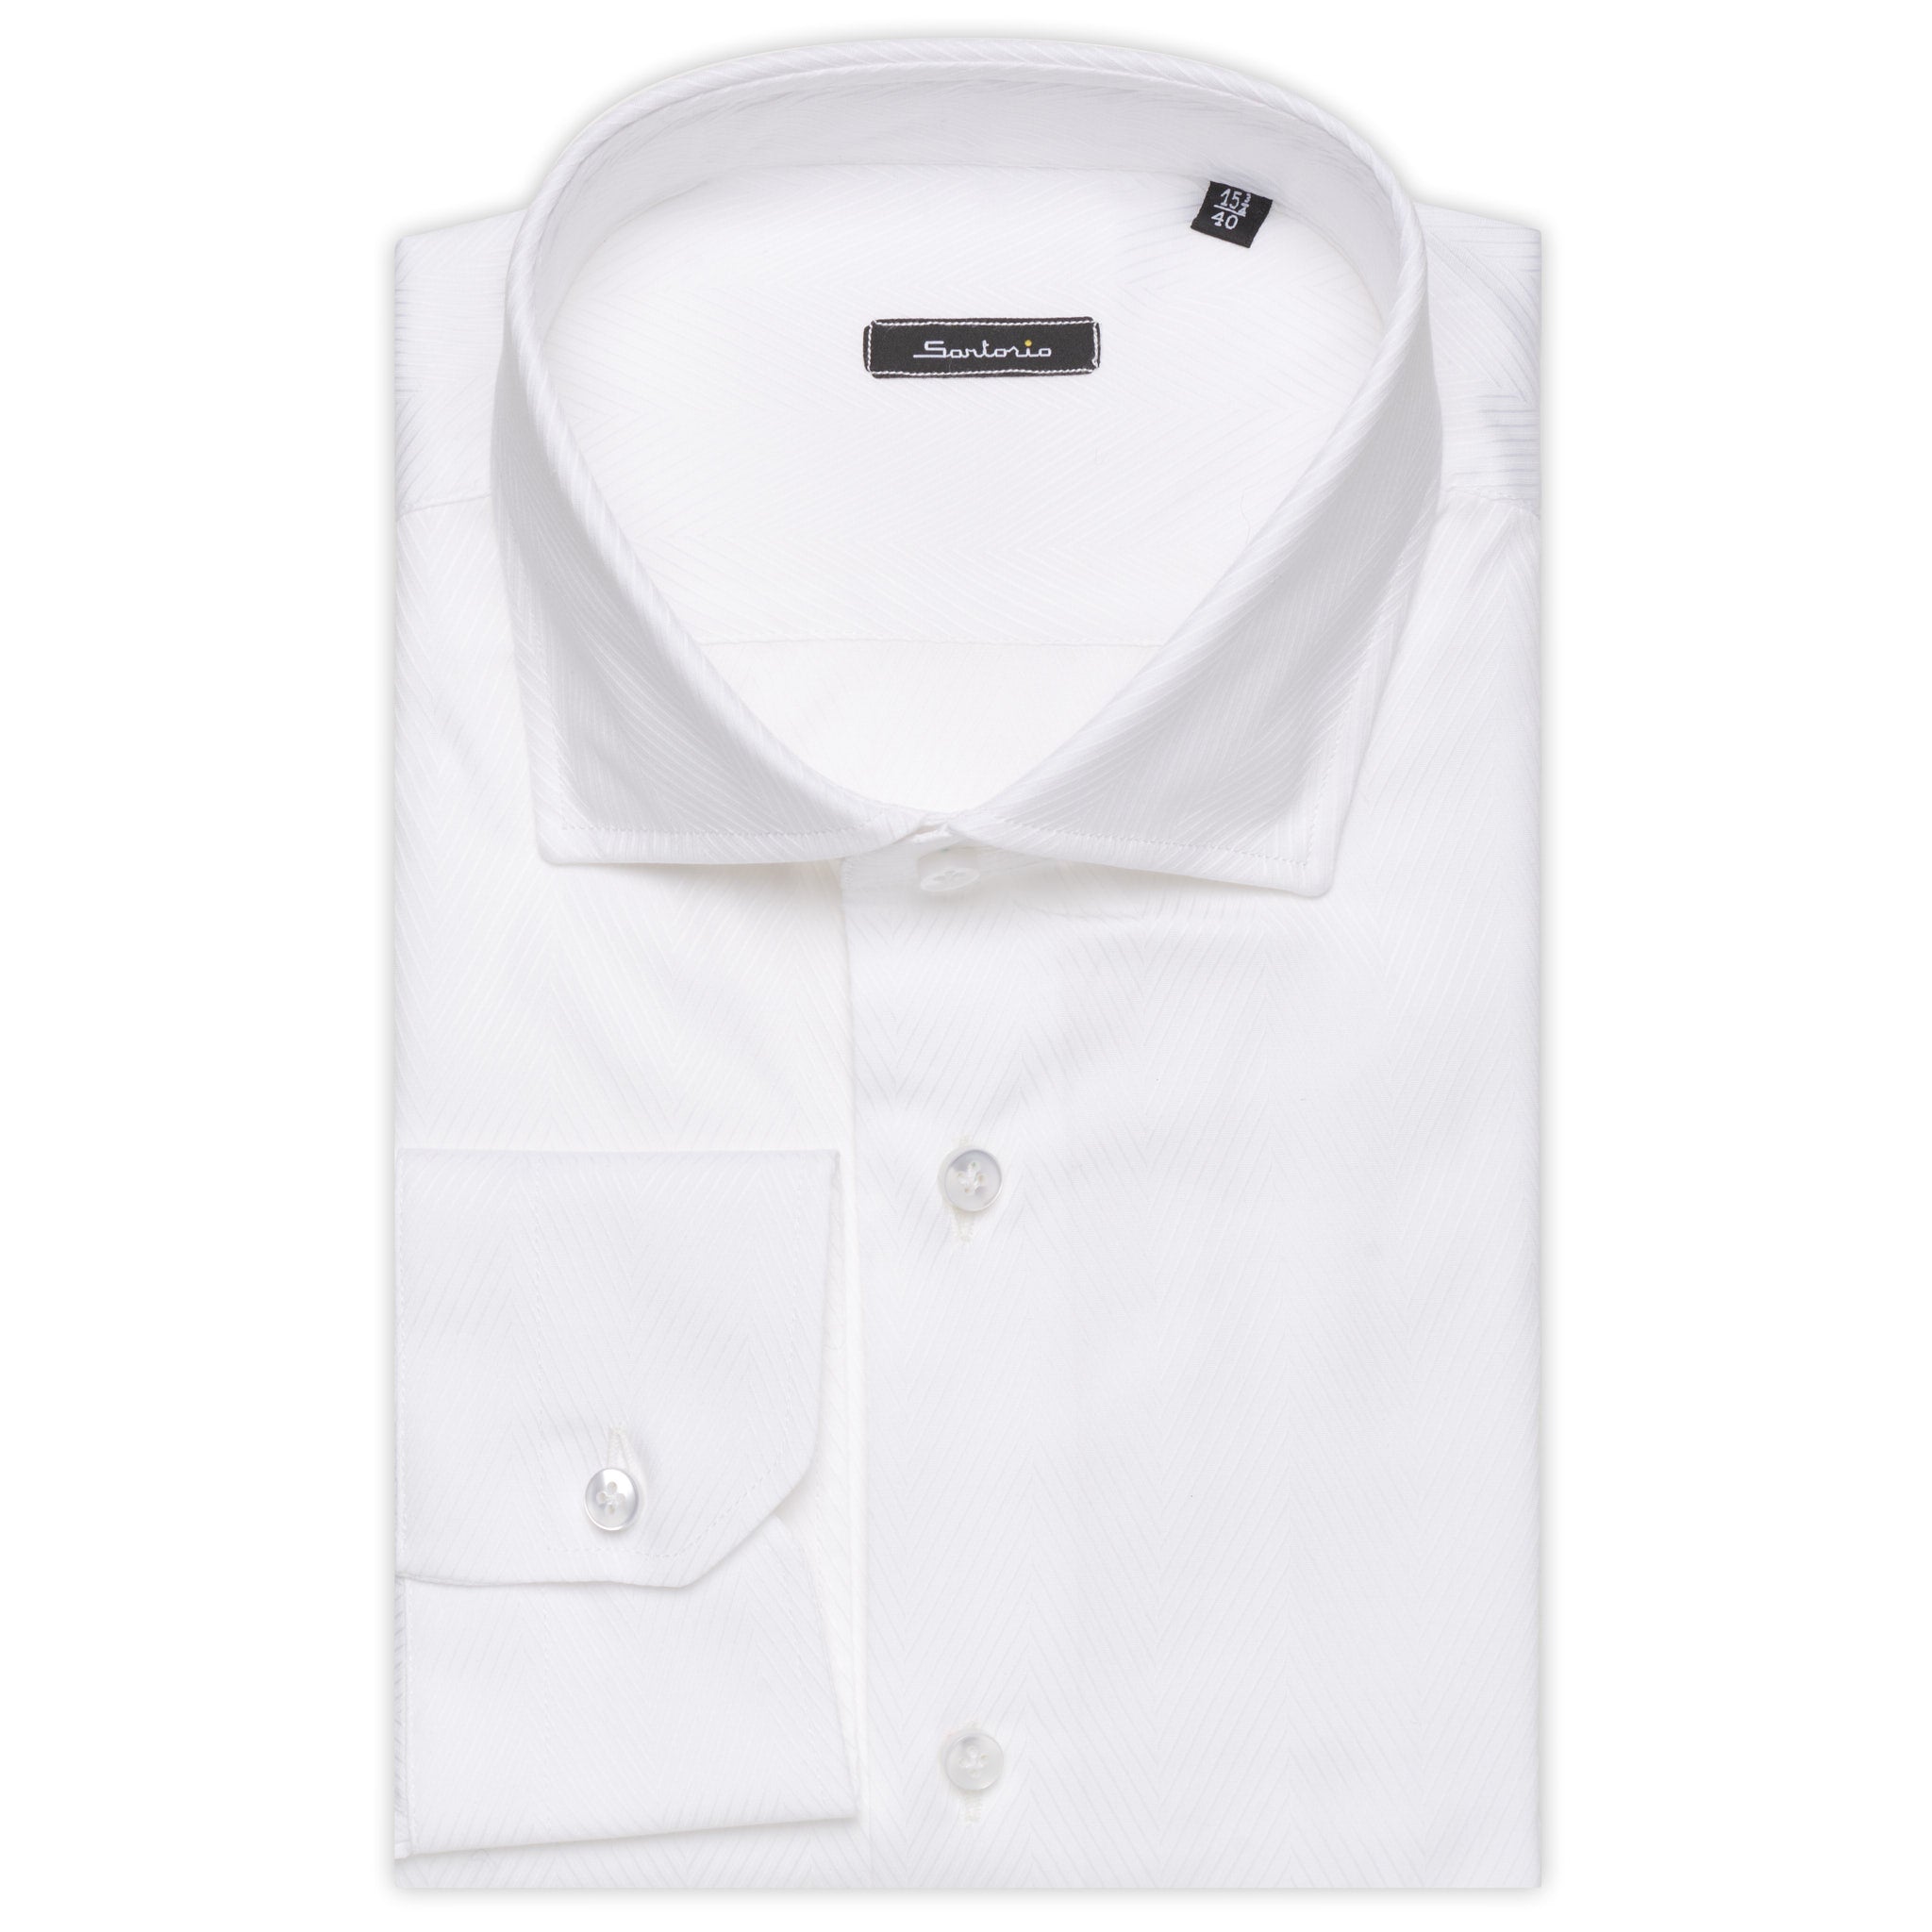 SARTORIO by KITON White Jacquard Herringbone Cotton Dress Shirt NEW Slim Fit SARTORIO